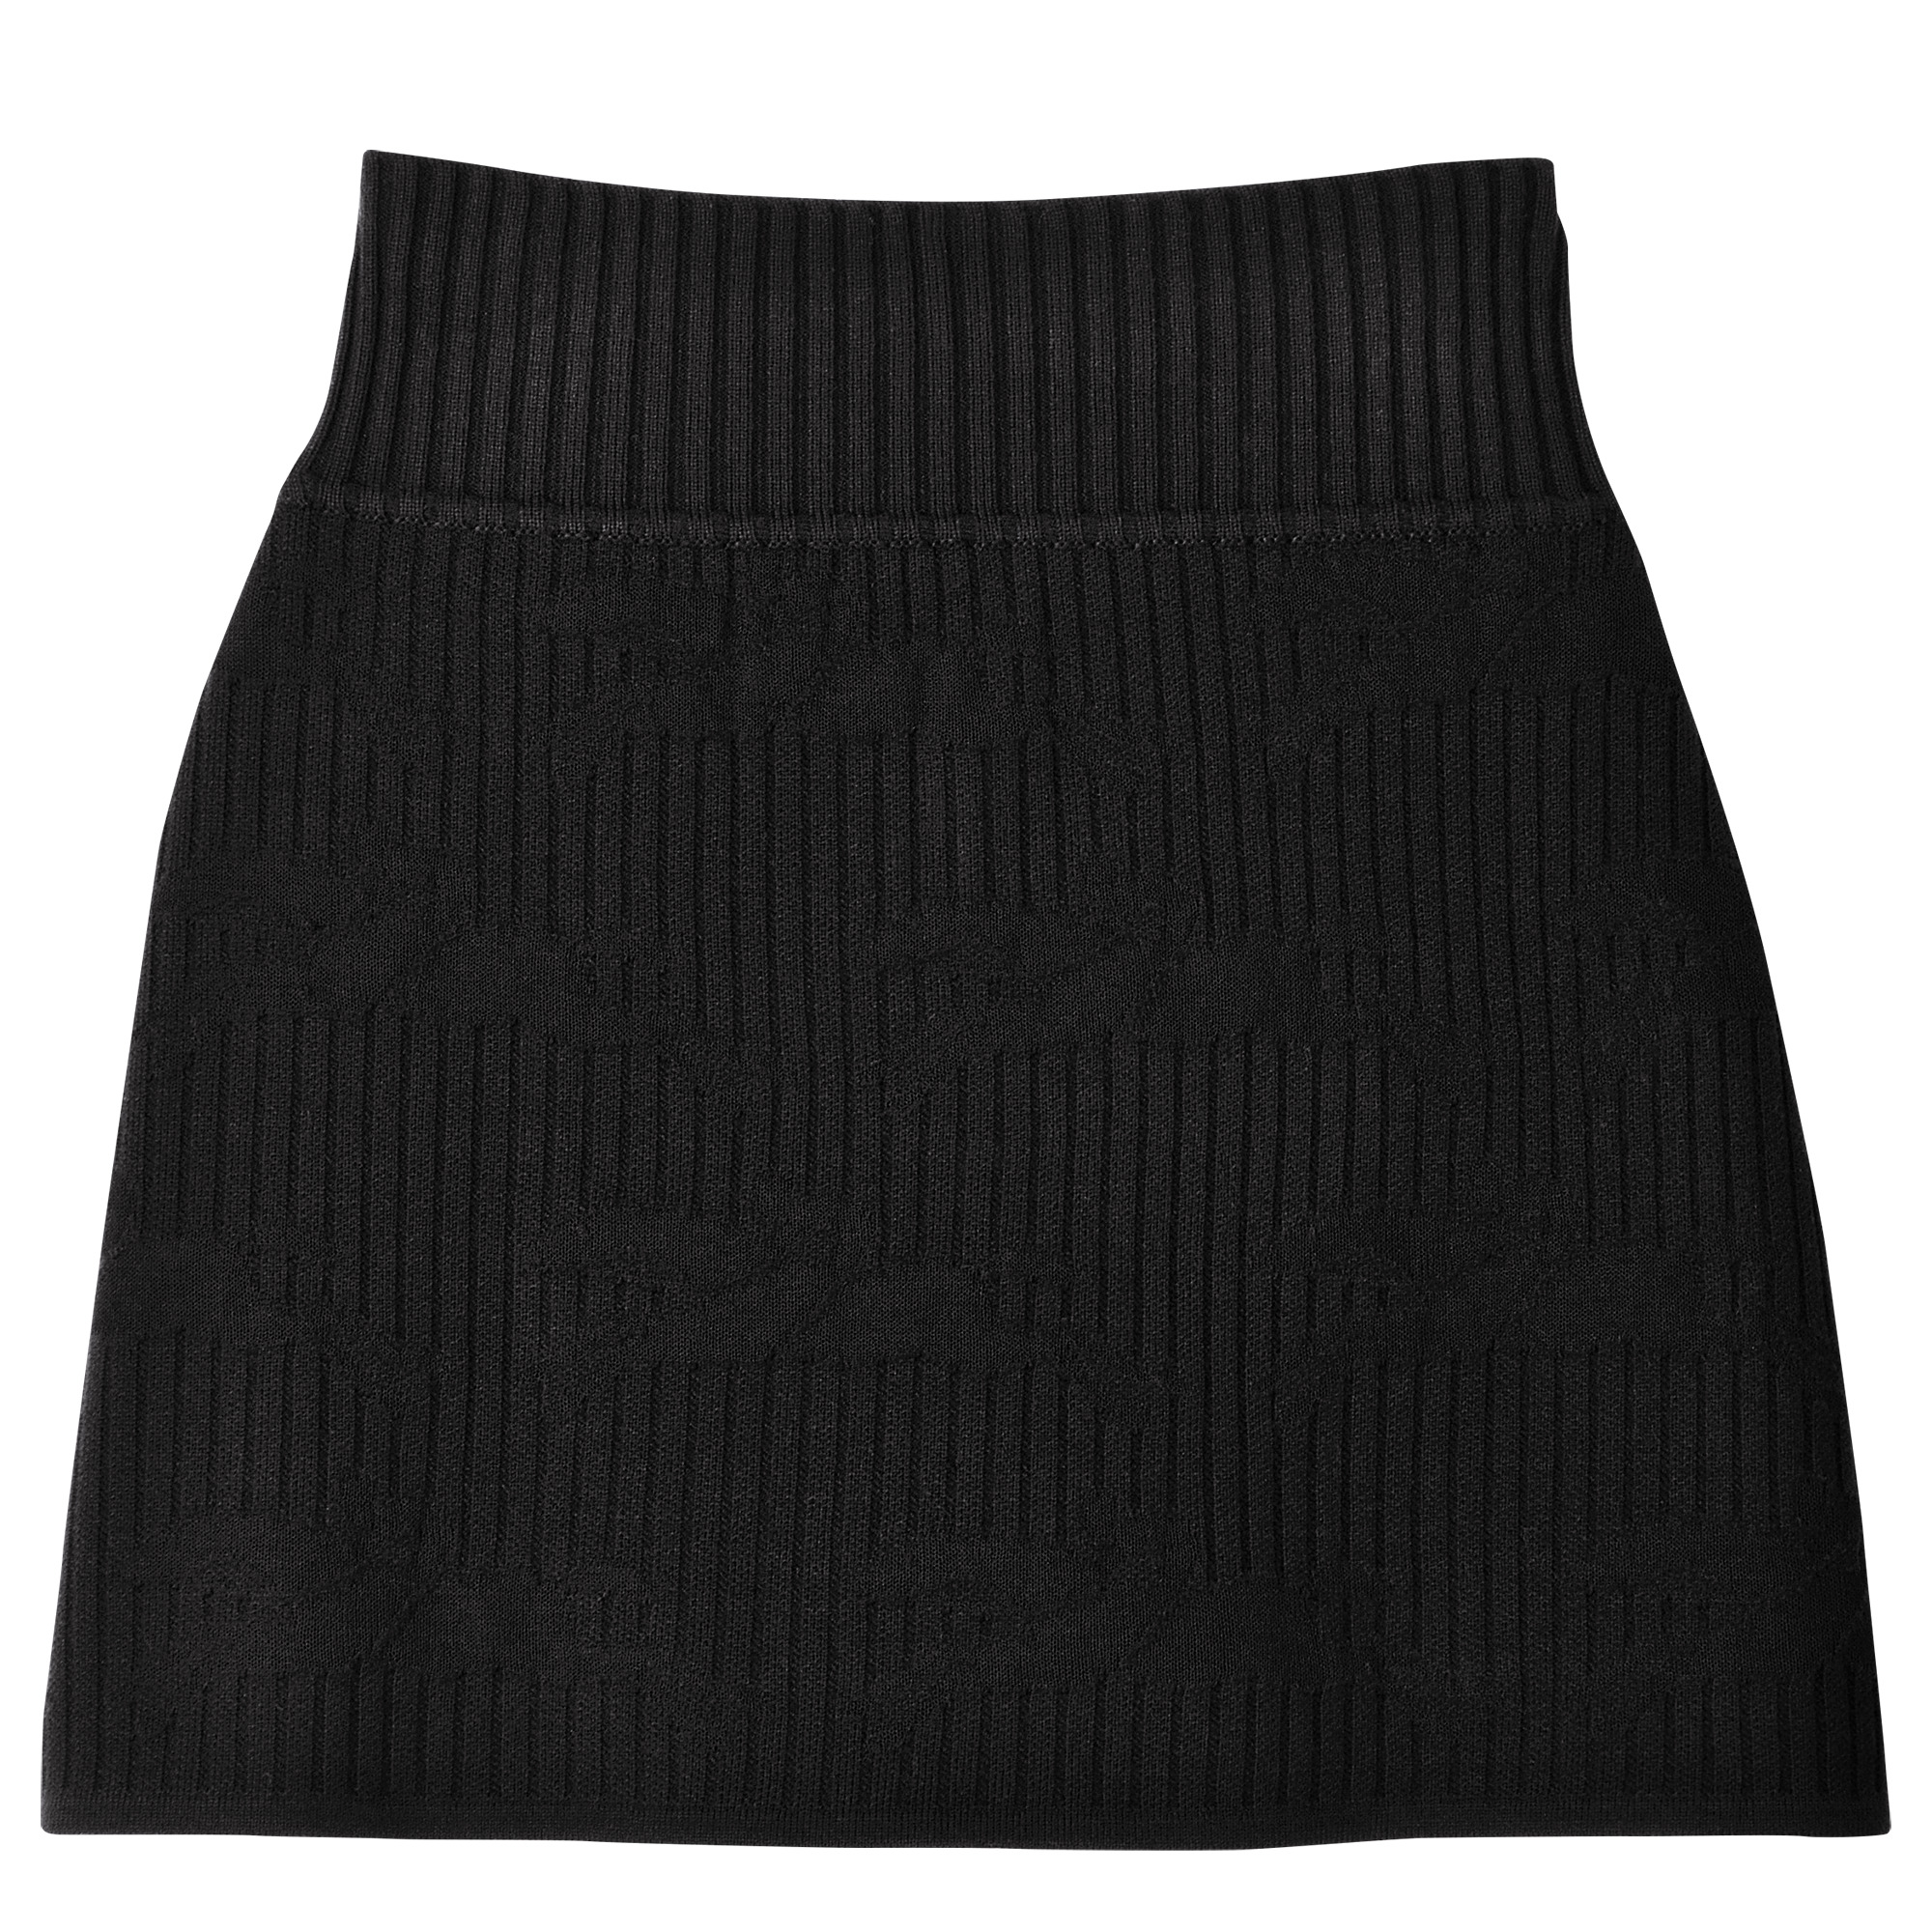 Skirt Black - Knit - 1